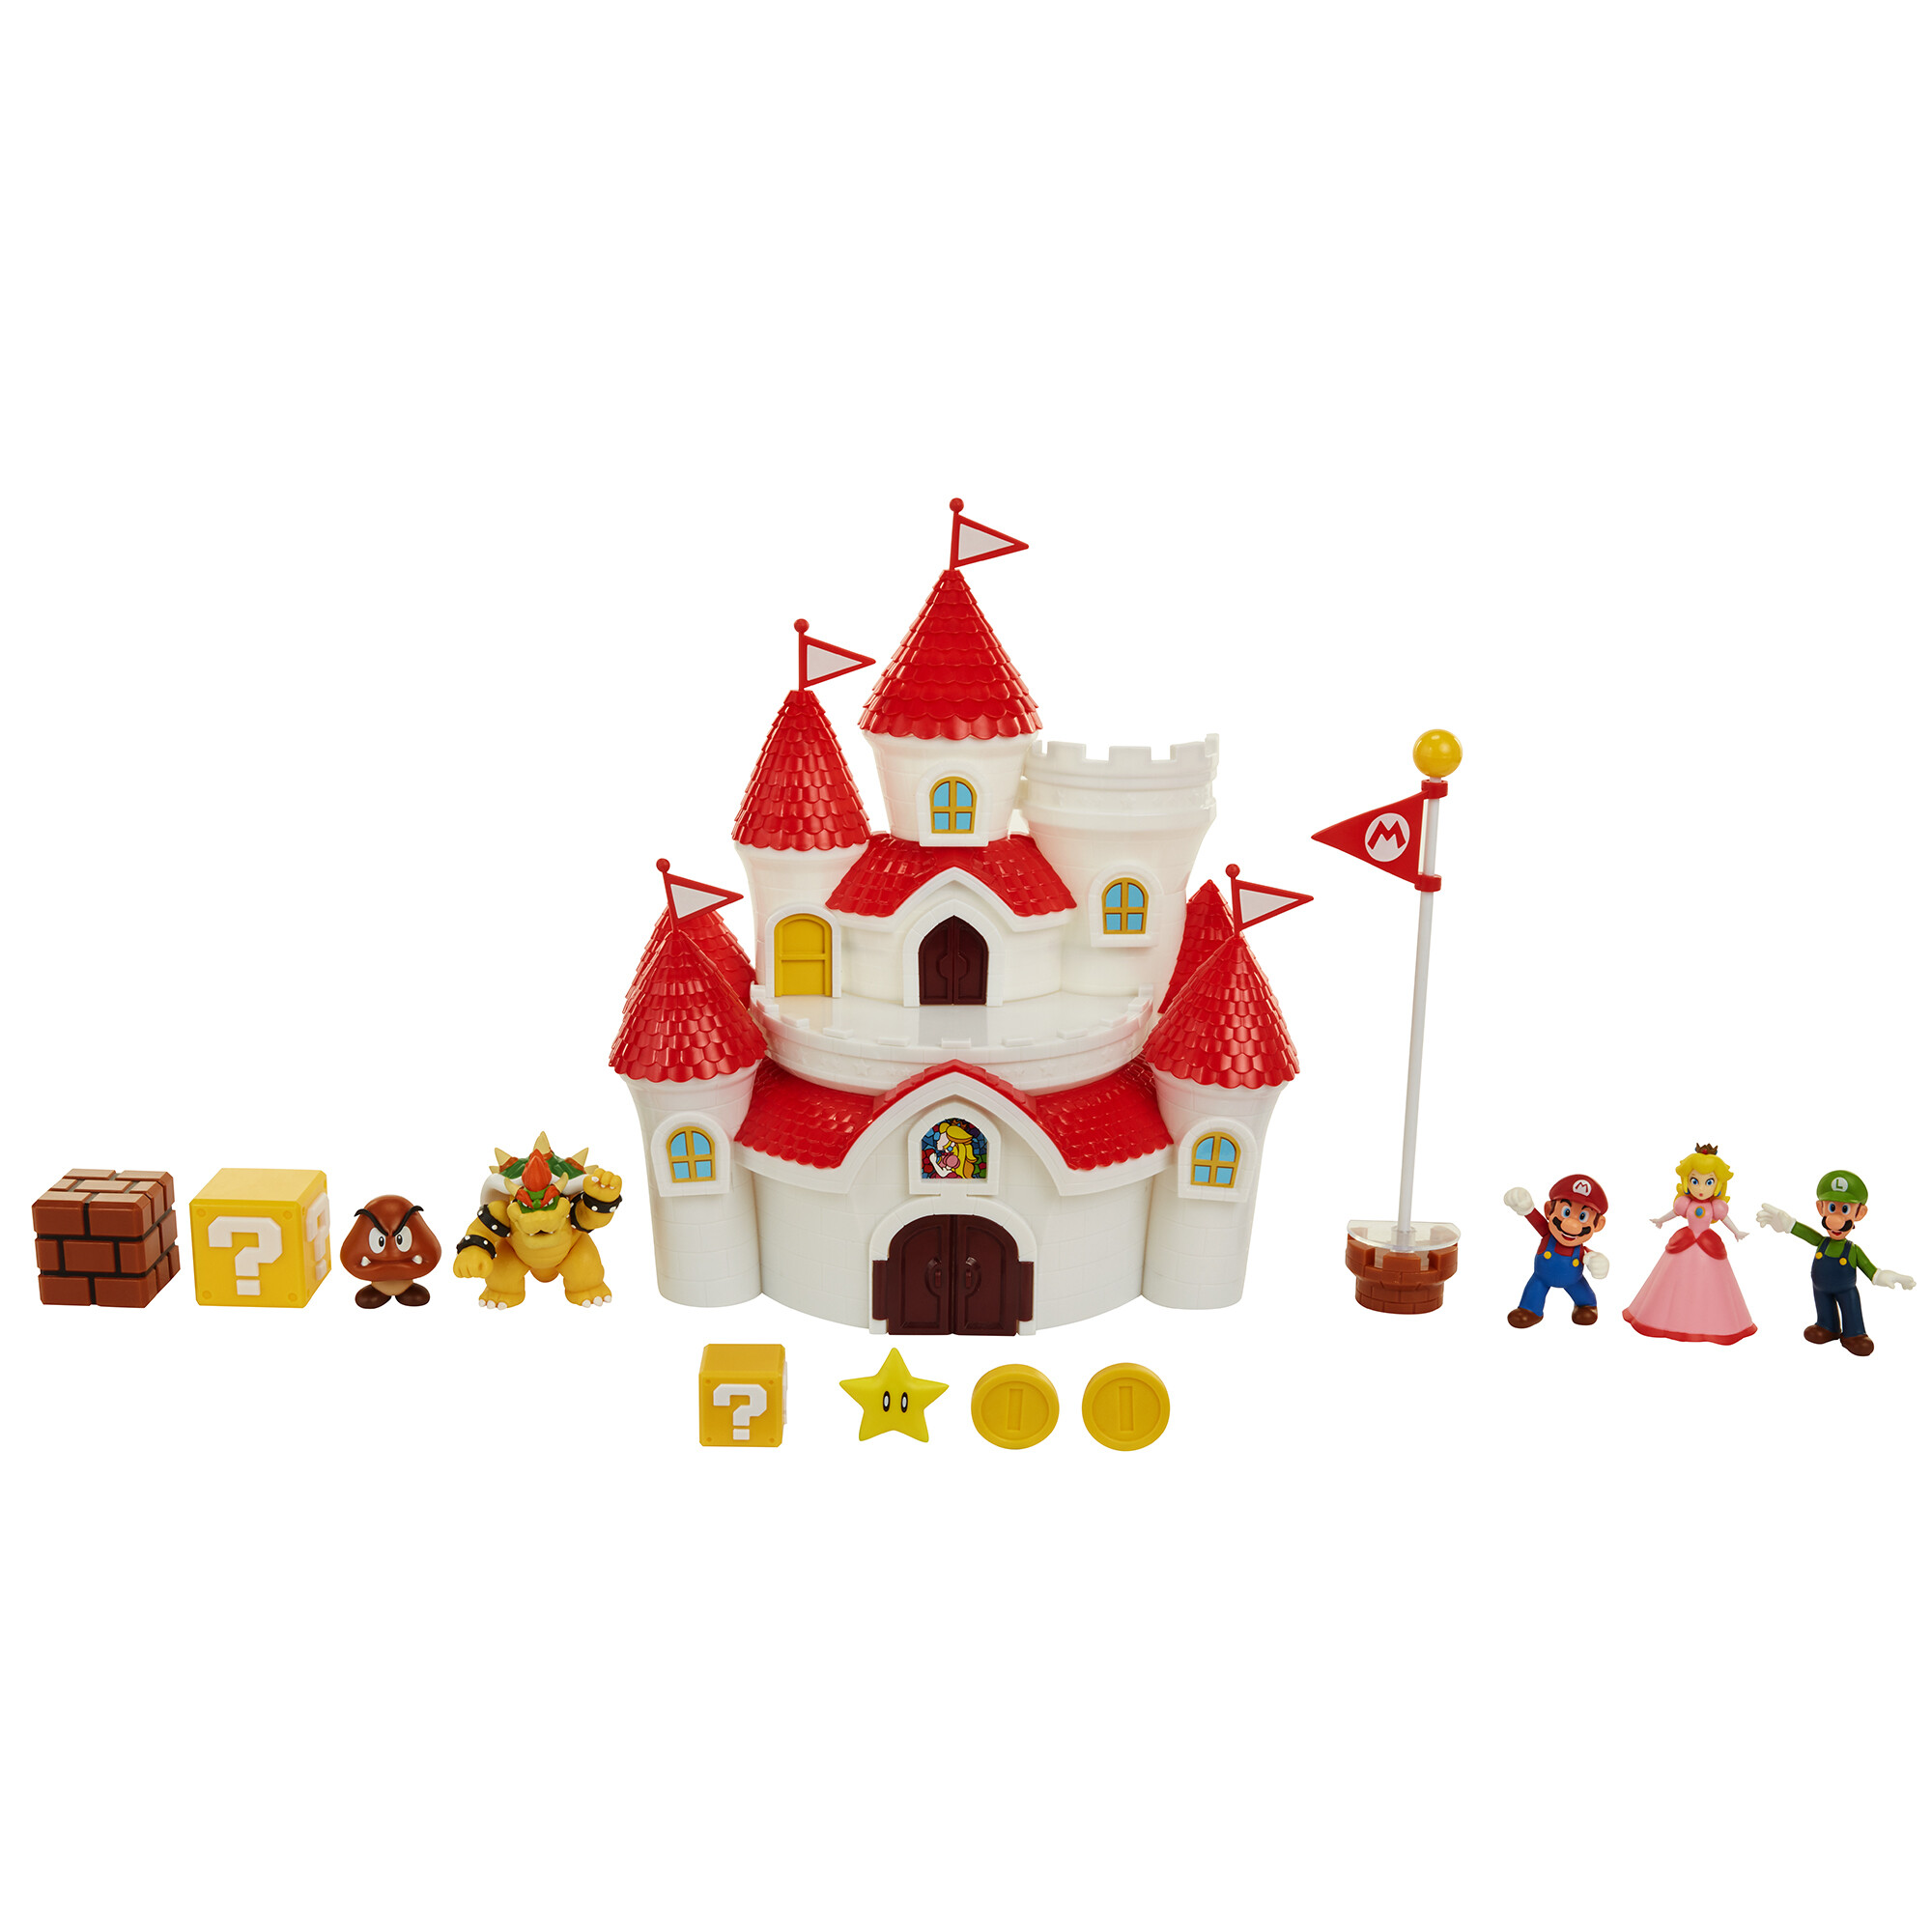 Super mario castello di peach delux con 5 personaggi articolati ed estremamente dettagliati - Super Mario